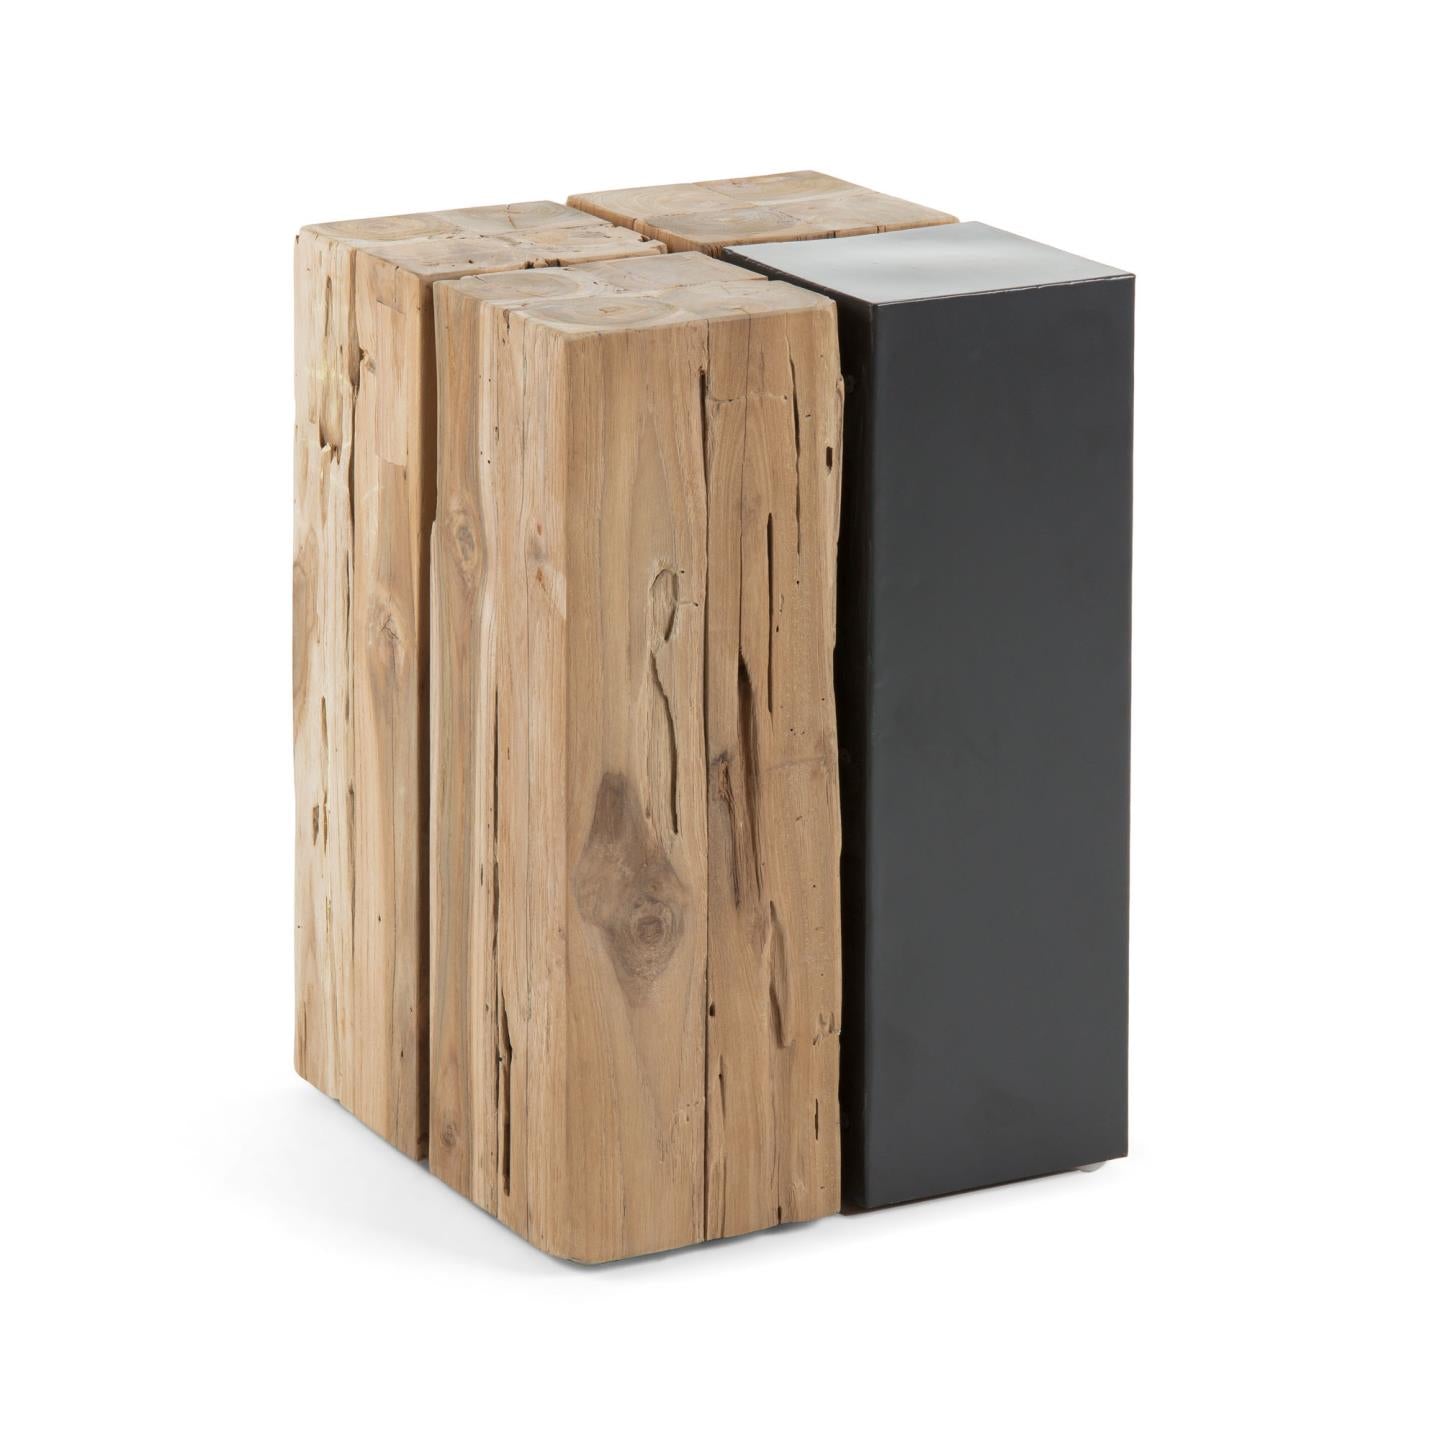 Kwango solid teak wood and metal side table, 29 x 29 cm